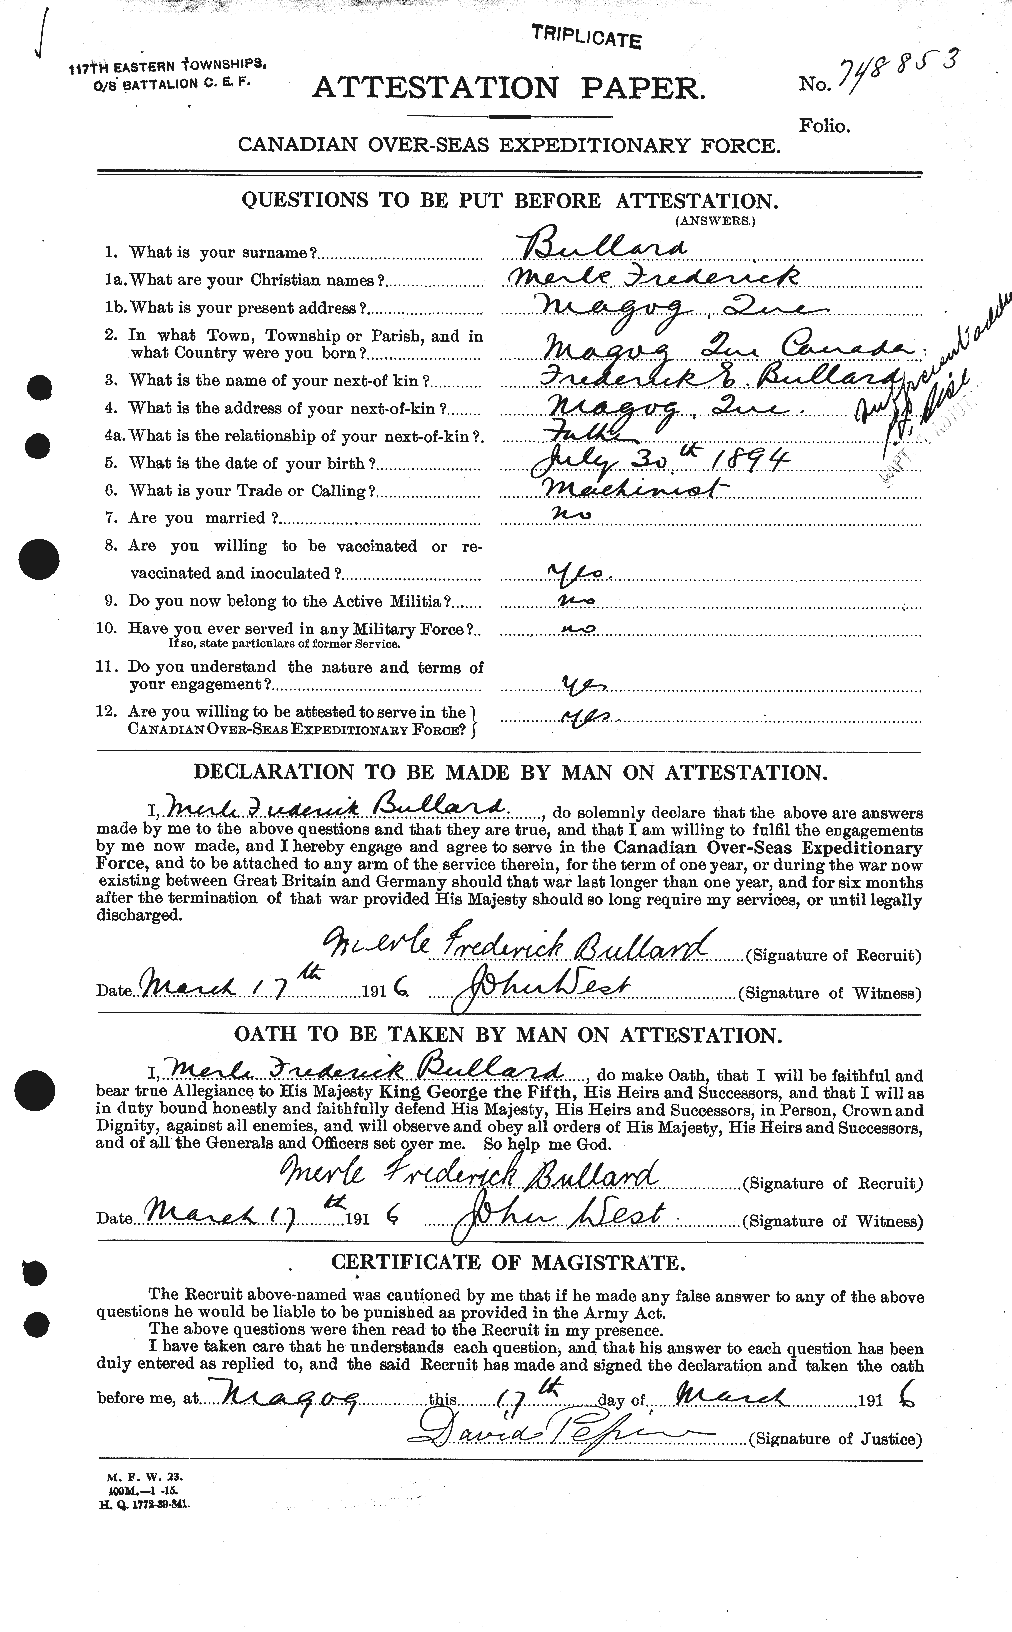 Dossiers du Personnel de la Première Guerre mondiale - CEC 273471a